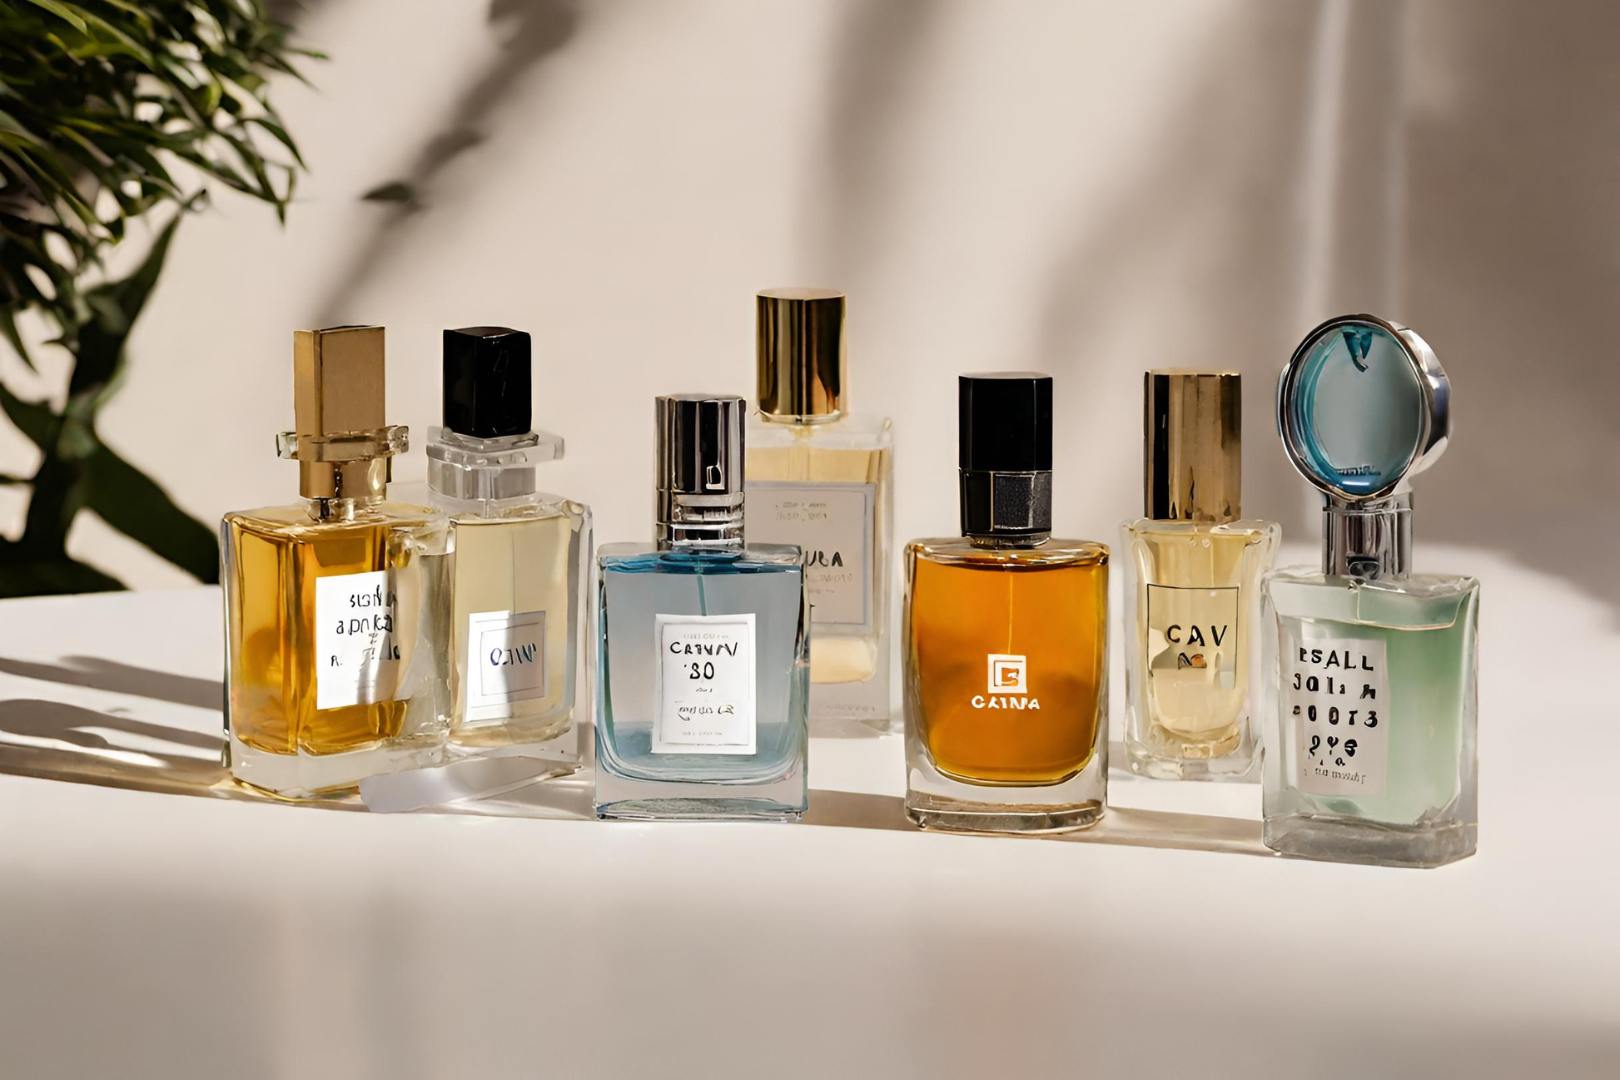 Melhores Perfumes Masculinos ate 300 reais: 10 Ótimas Opções